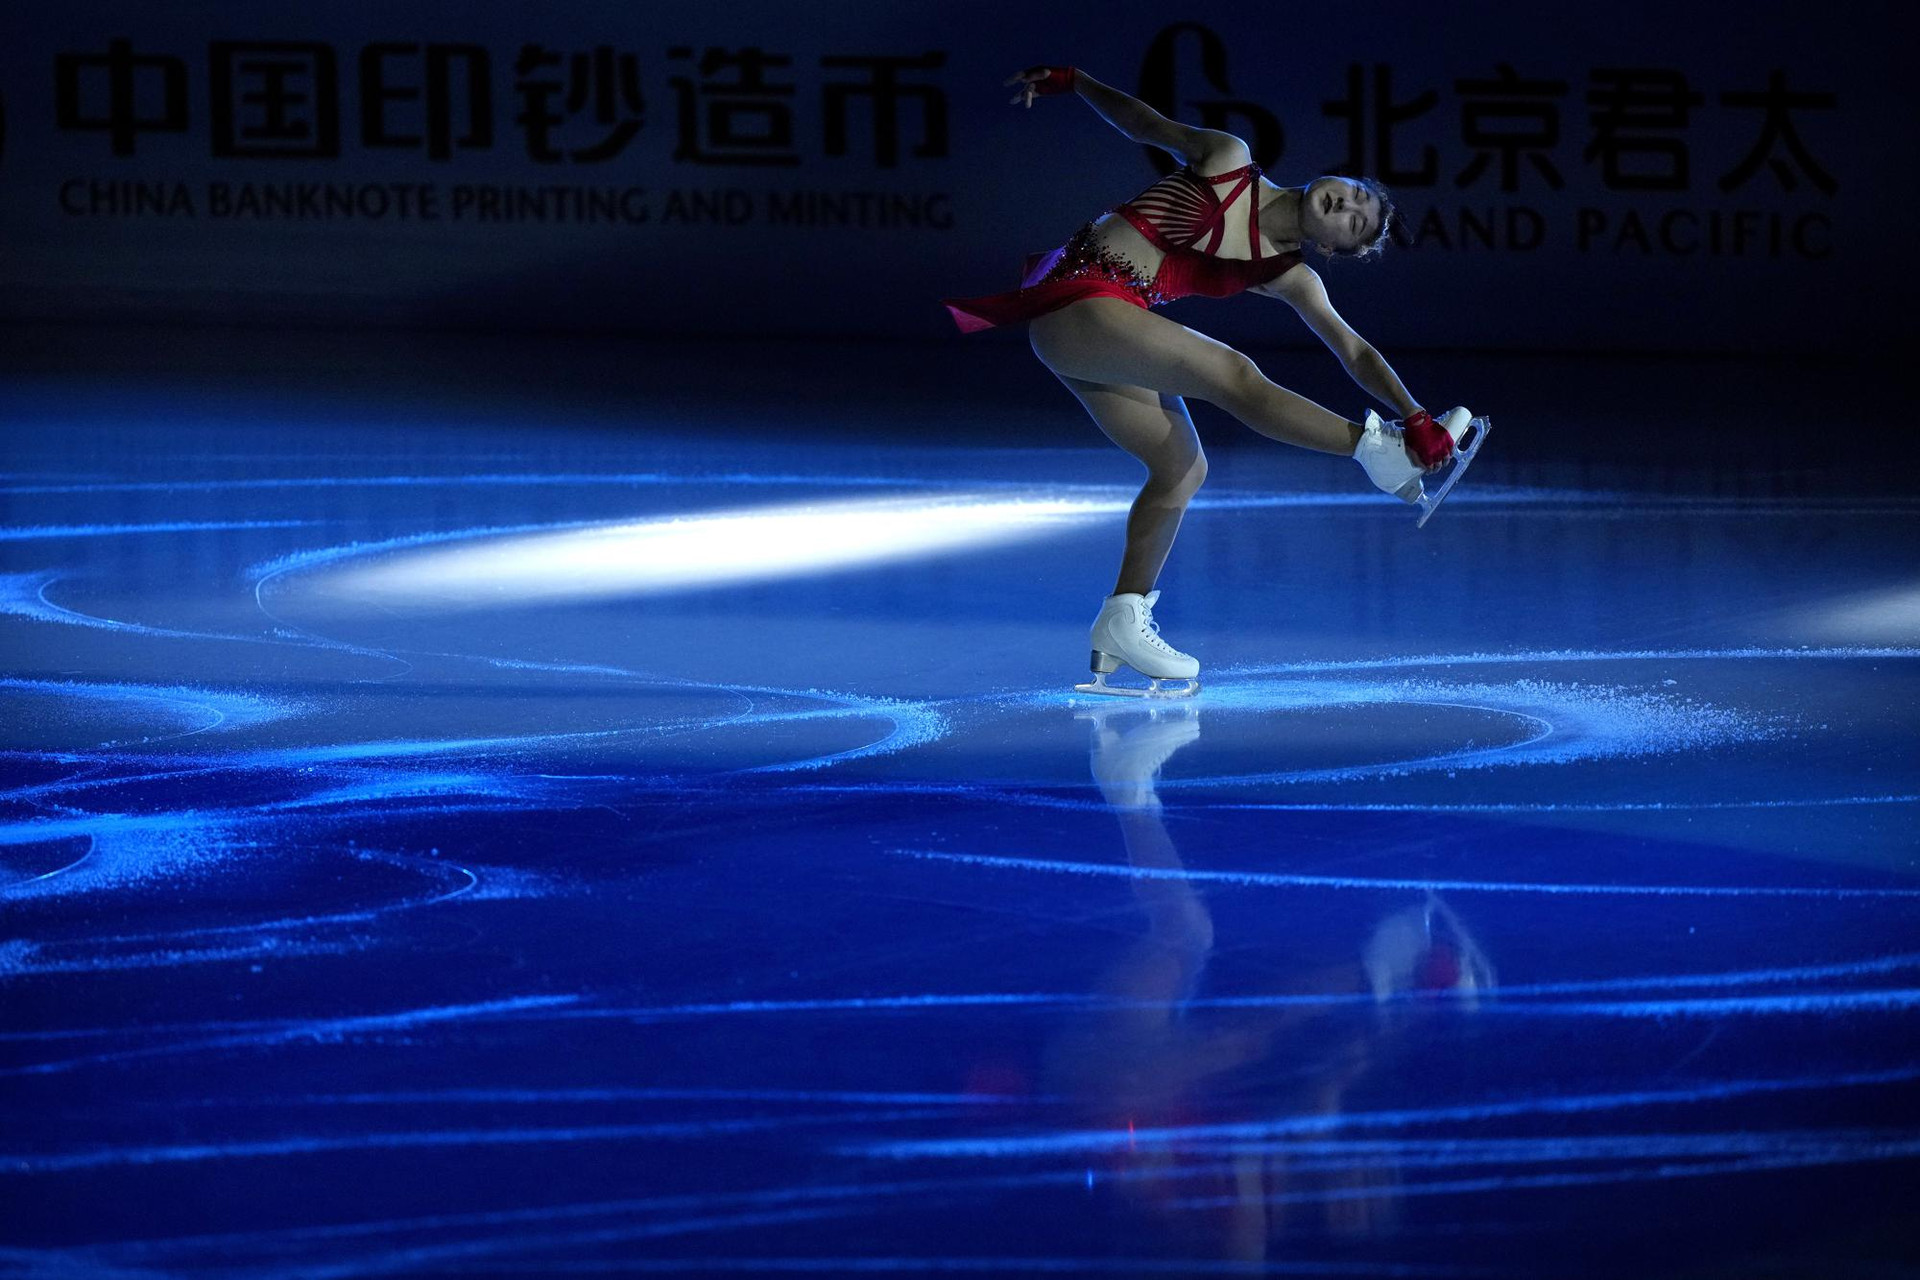 Vận động viên Kaori Sakamoto người Nhật Bản biểu diễn trong buổi dạ tiệc tại Giải Trượt băng Nghệ thuật Mở rộng Châu Á, một sự kiện thử nghiệm cho Thế vận hội Mùa đông 2022, tại một sân vận động trong nhà ở thủ đô Bắc Kinh. Ảnh: AP/Mark Schiefelbein.